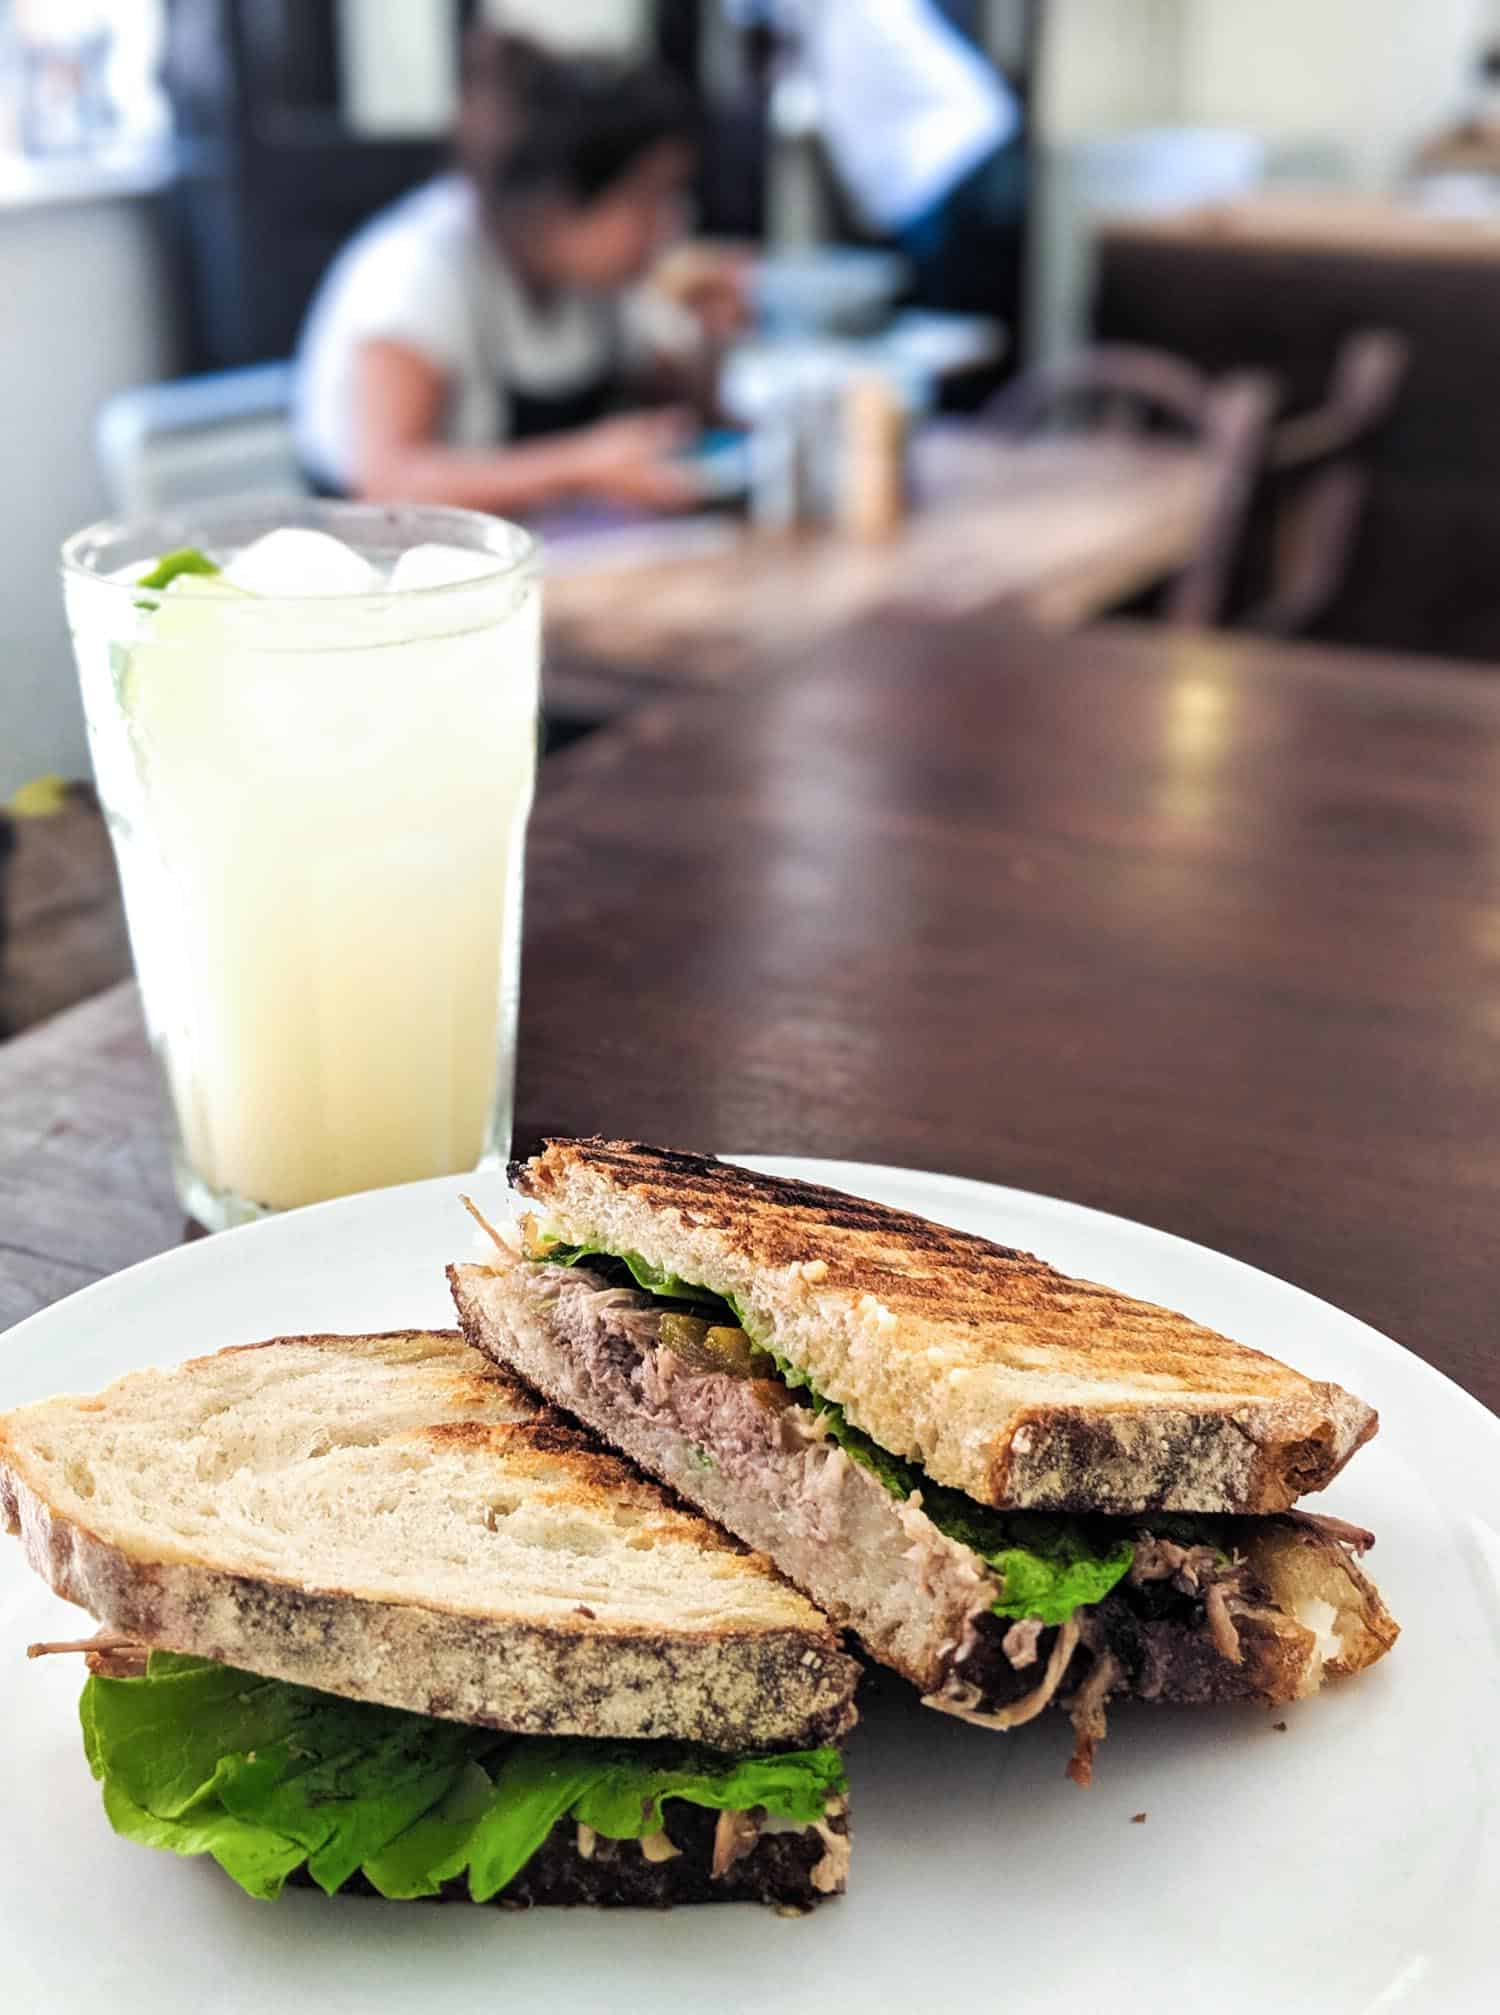 Pork sandwich and drink at El Cafe in Old Havana